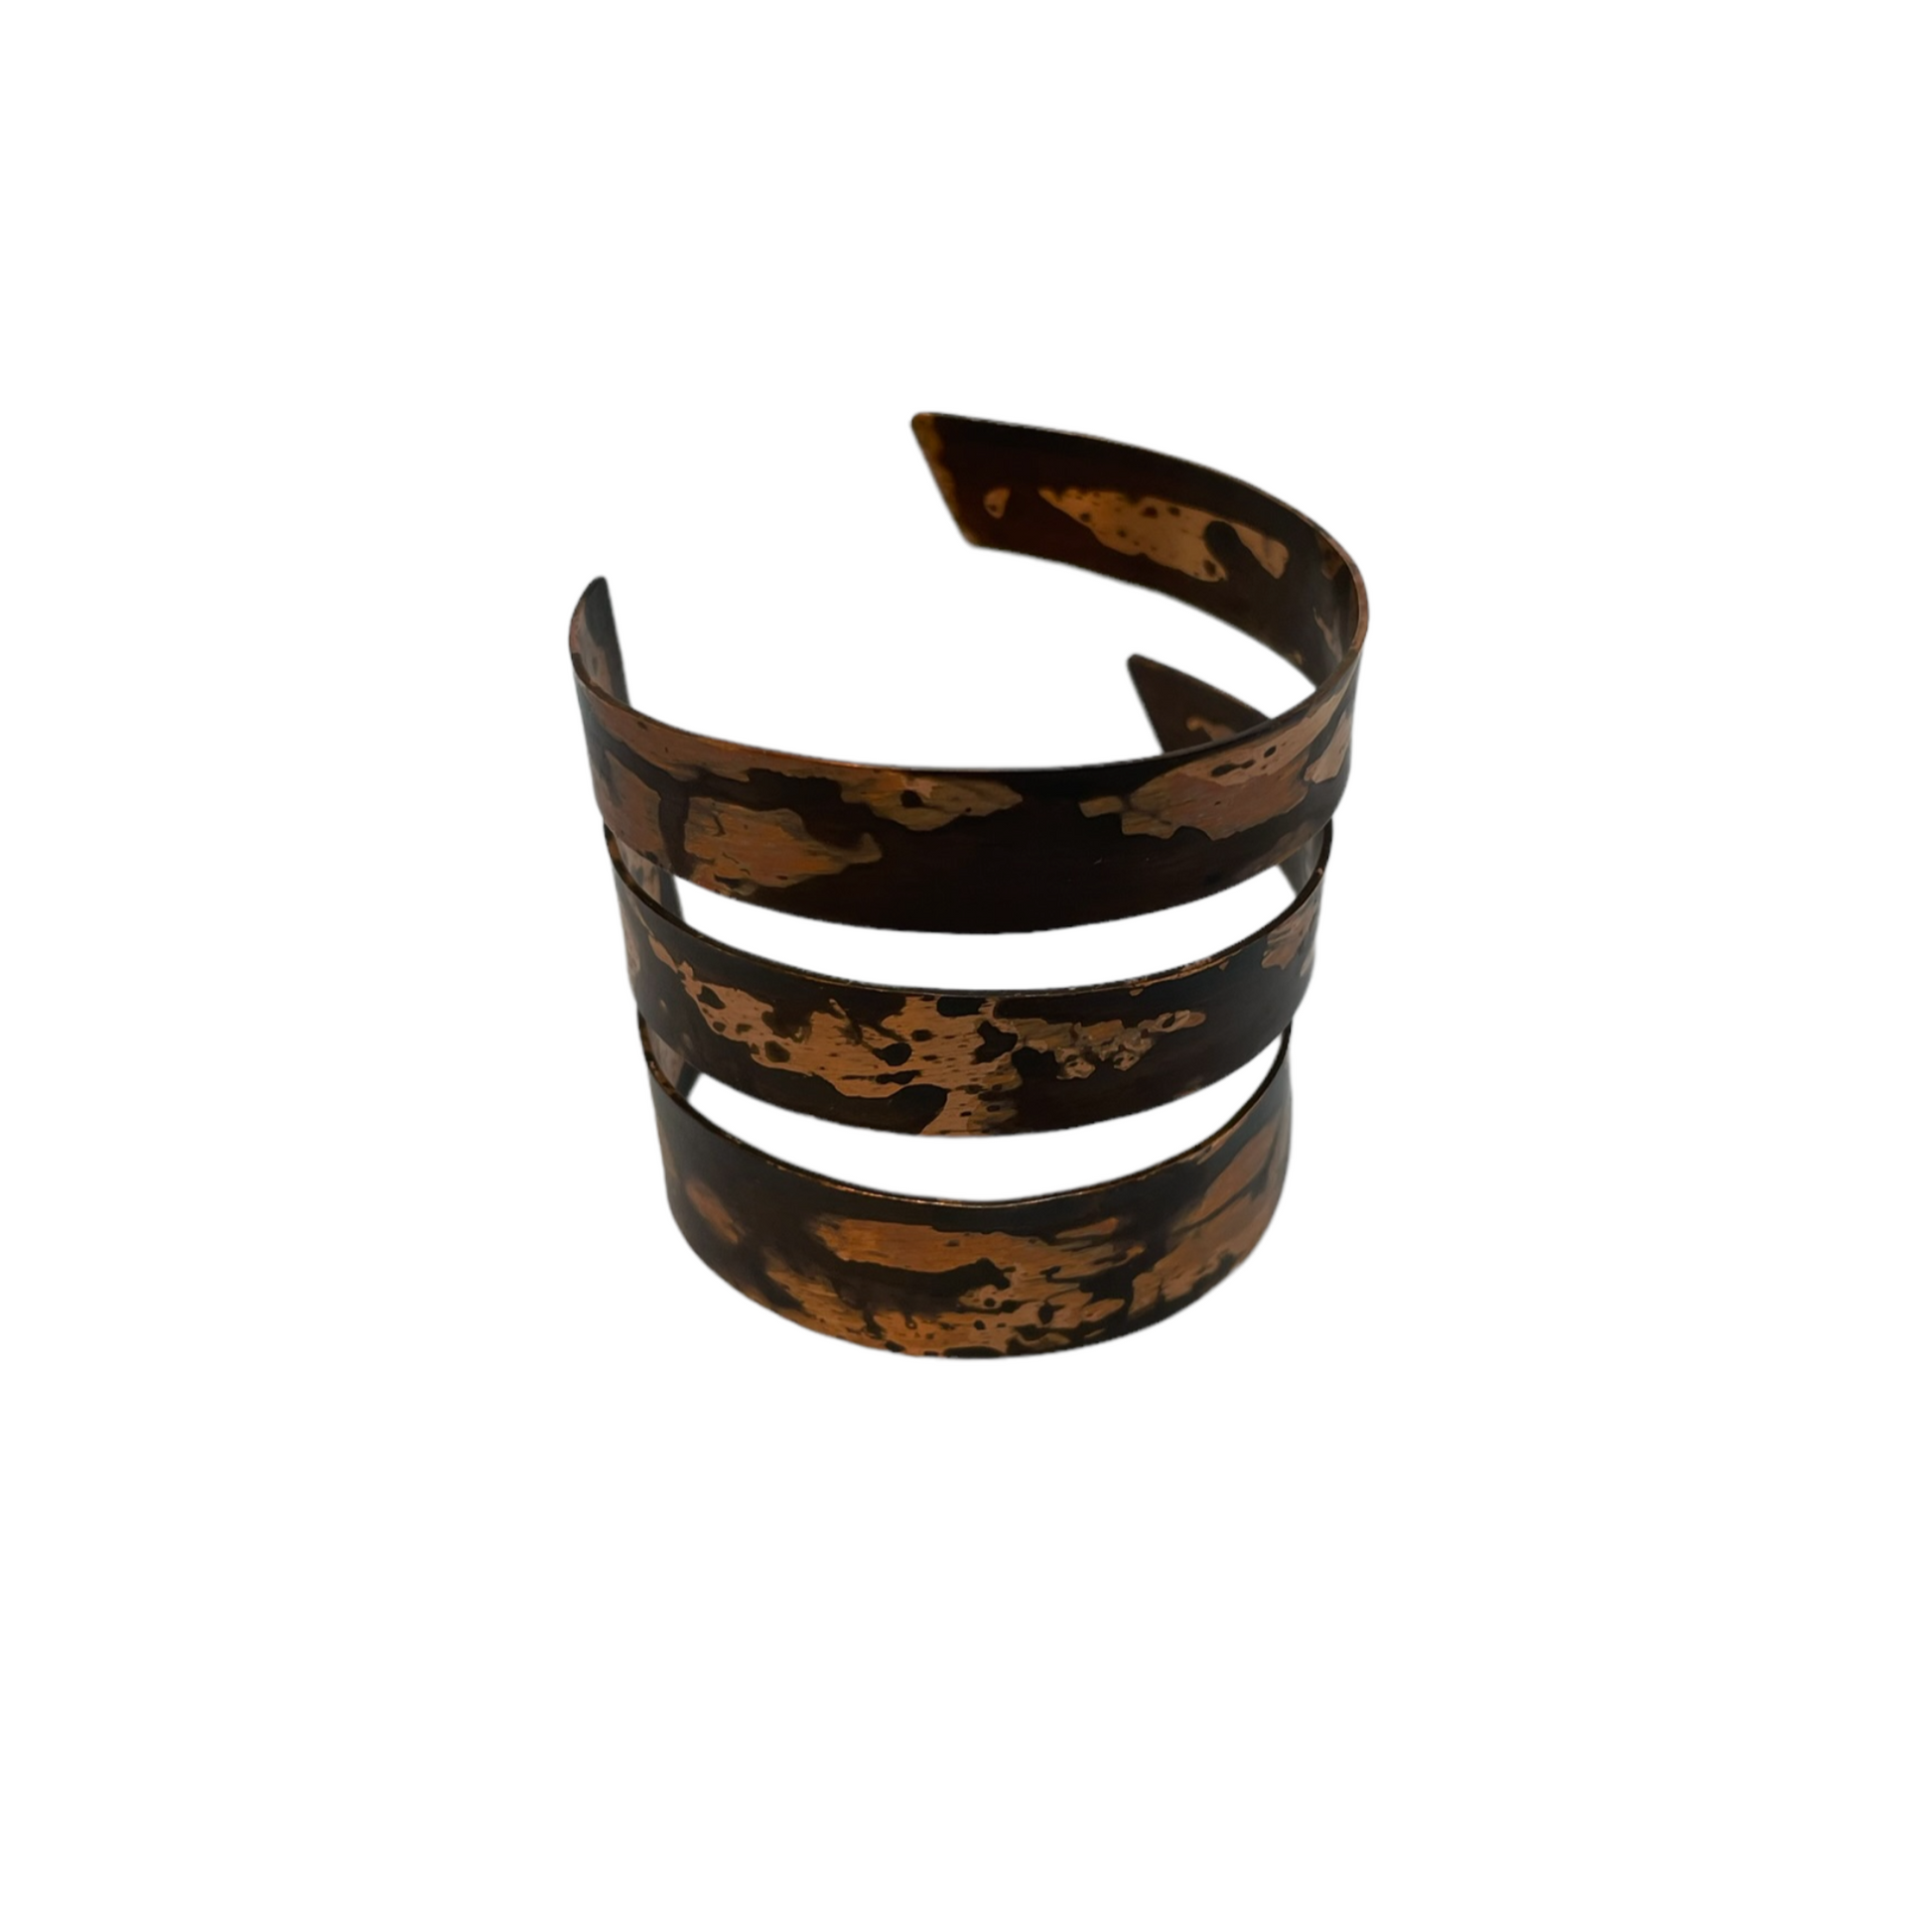 Oxidised copper cuff bracelet | Rose - Black Feathers Bracelet - CURIUDO